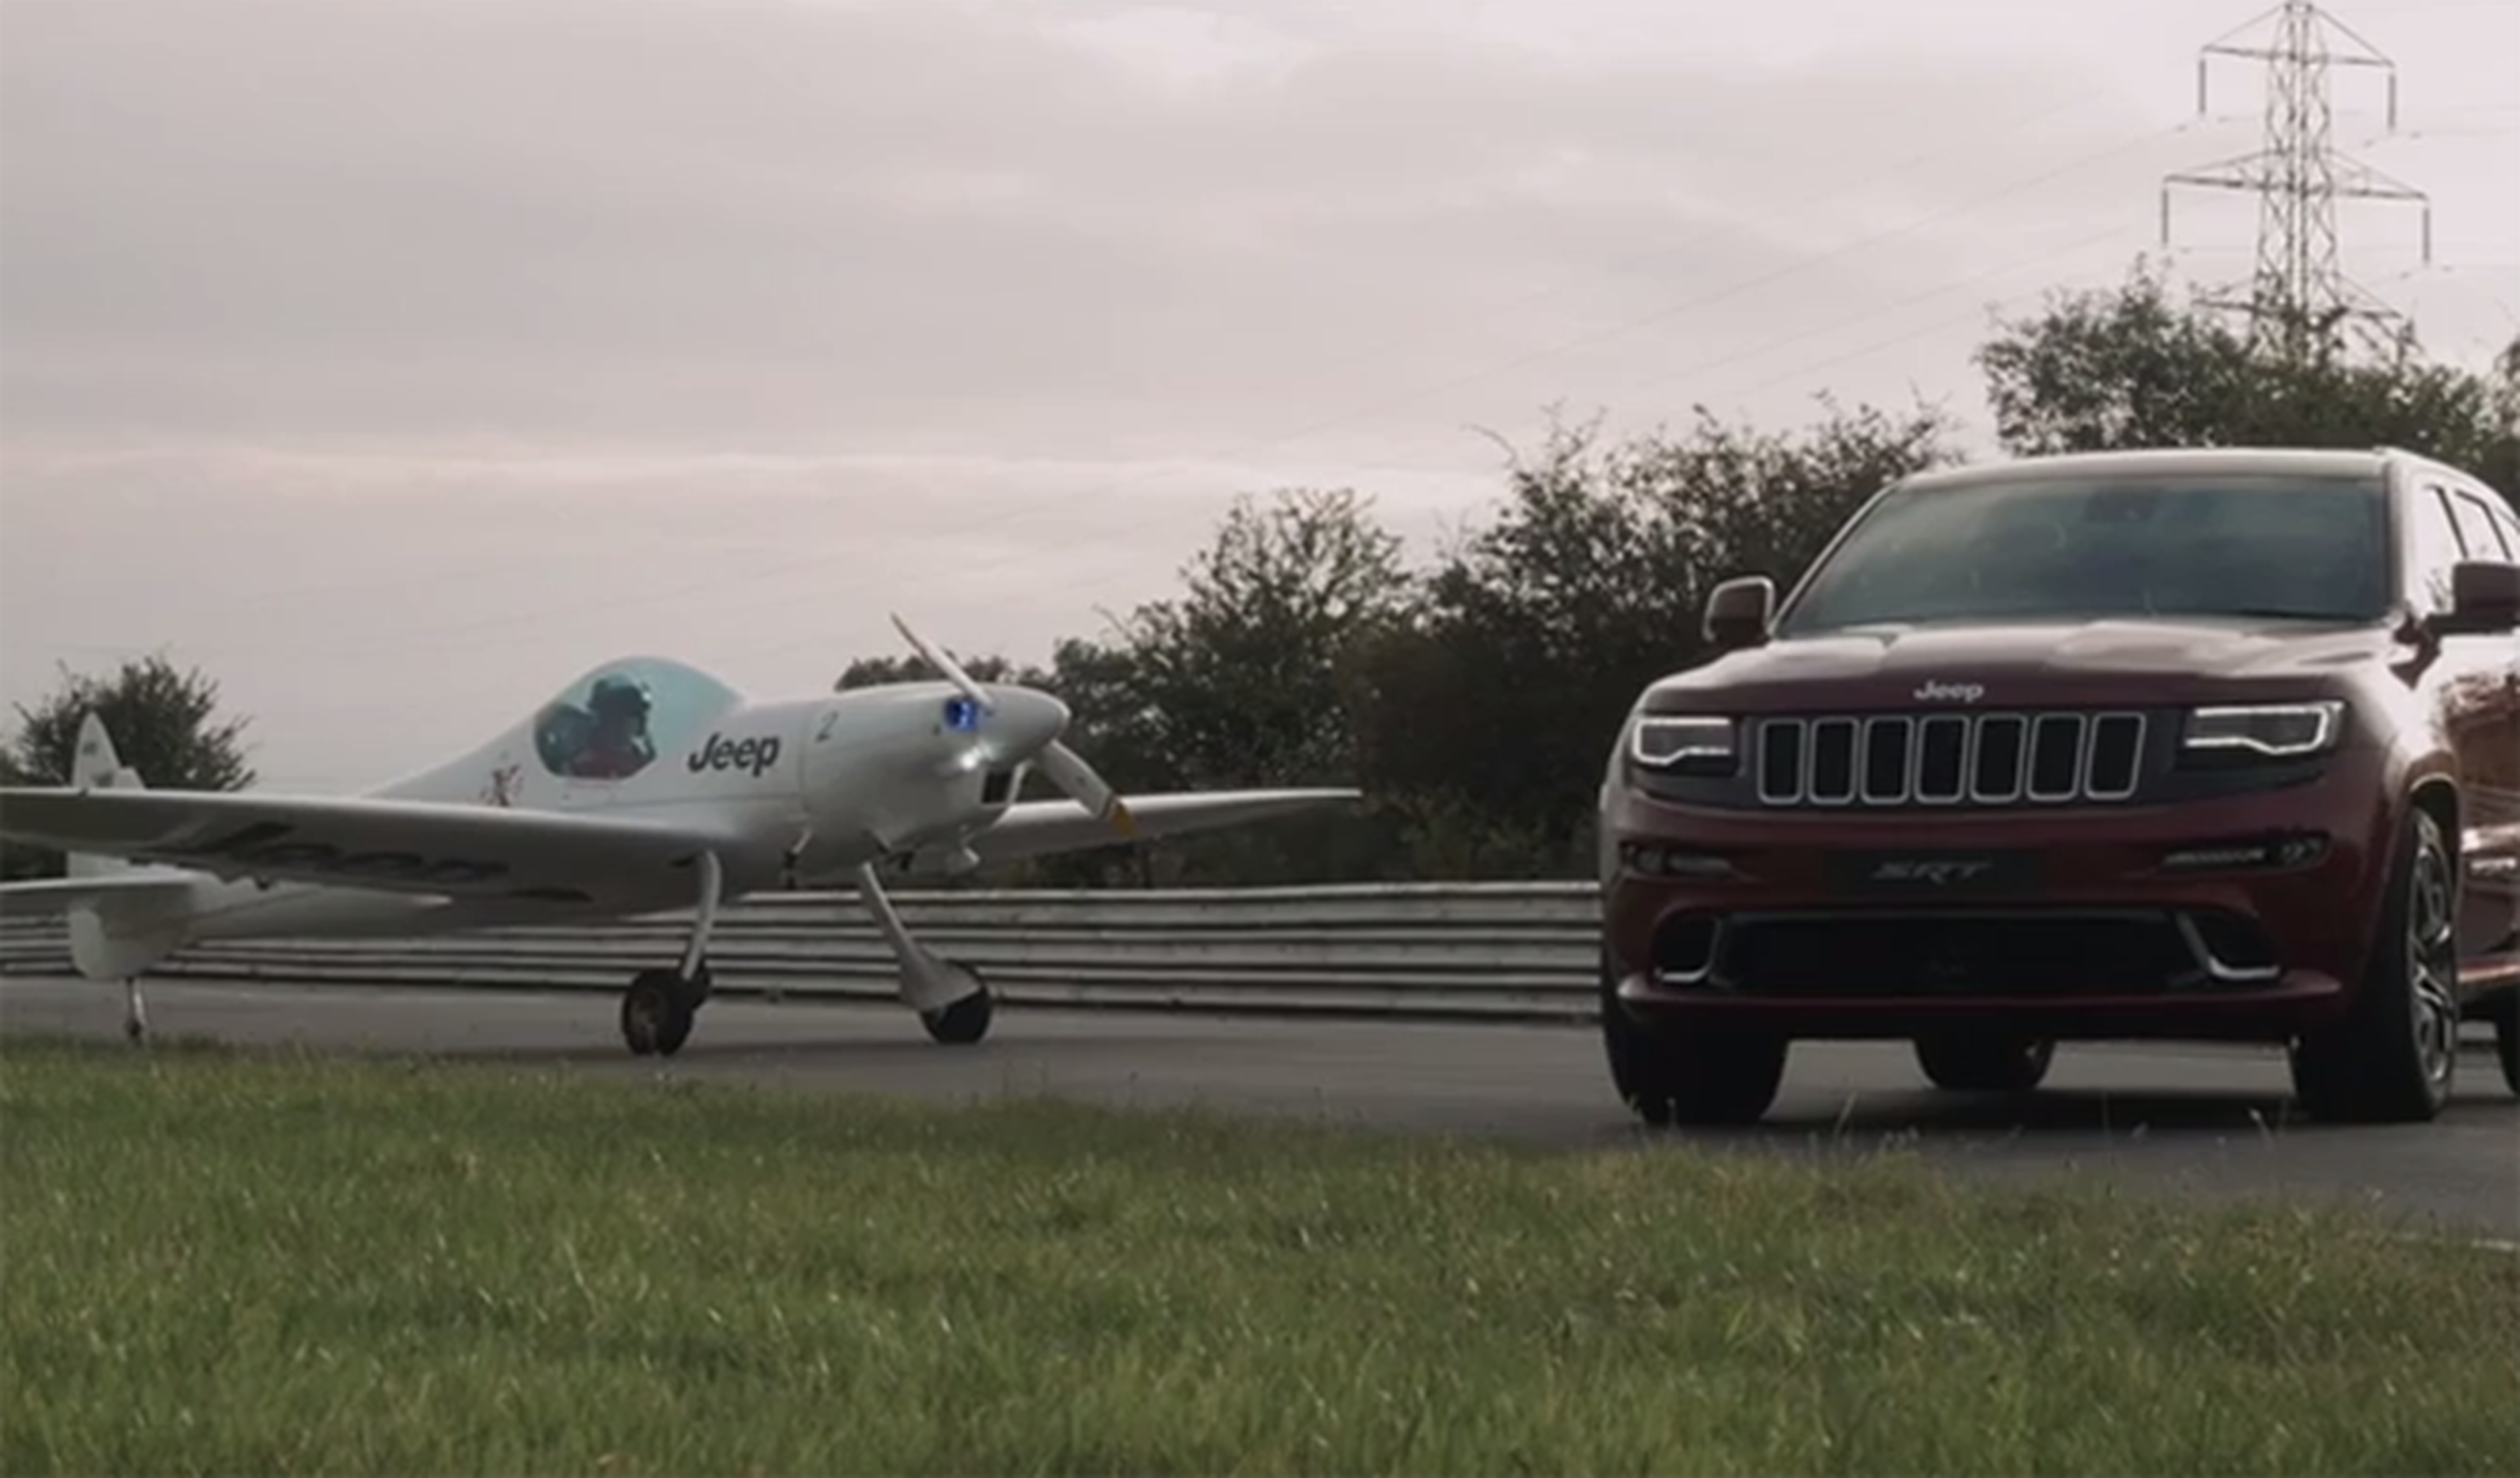 Jeep Grand Cherokee vs avión, ¿quién es más rápido?